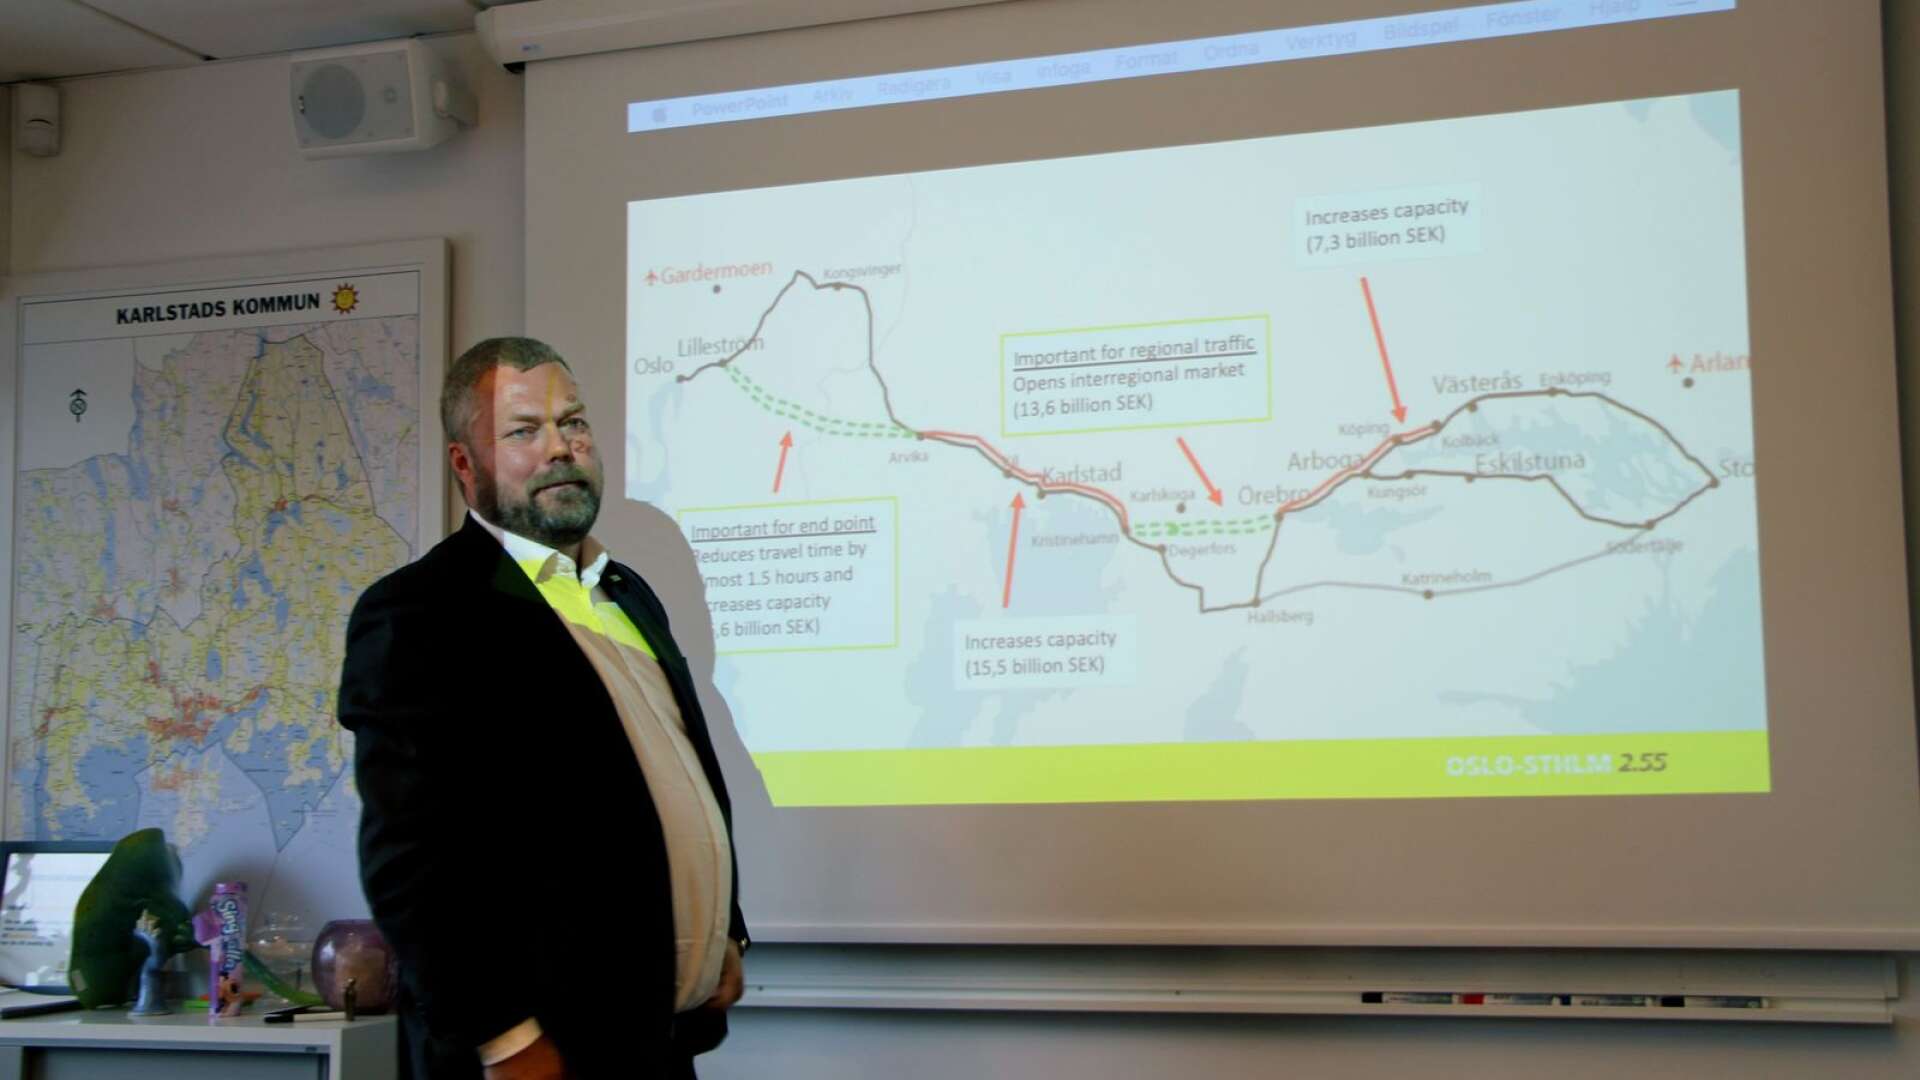 Jonas Karlsson, vd för Oslo-Stockholm 2.55 är mycket nöjd med att den norska infrastrukturministern Knut Arild Hareide ser stora möjligheter med den tilltänkta snabbtåglinjen mellan Oslo och Stockholm.